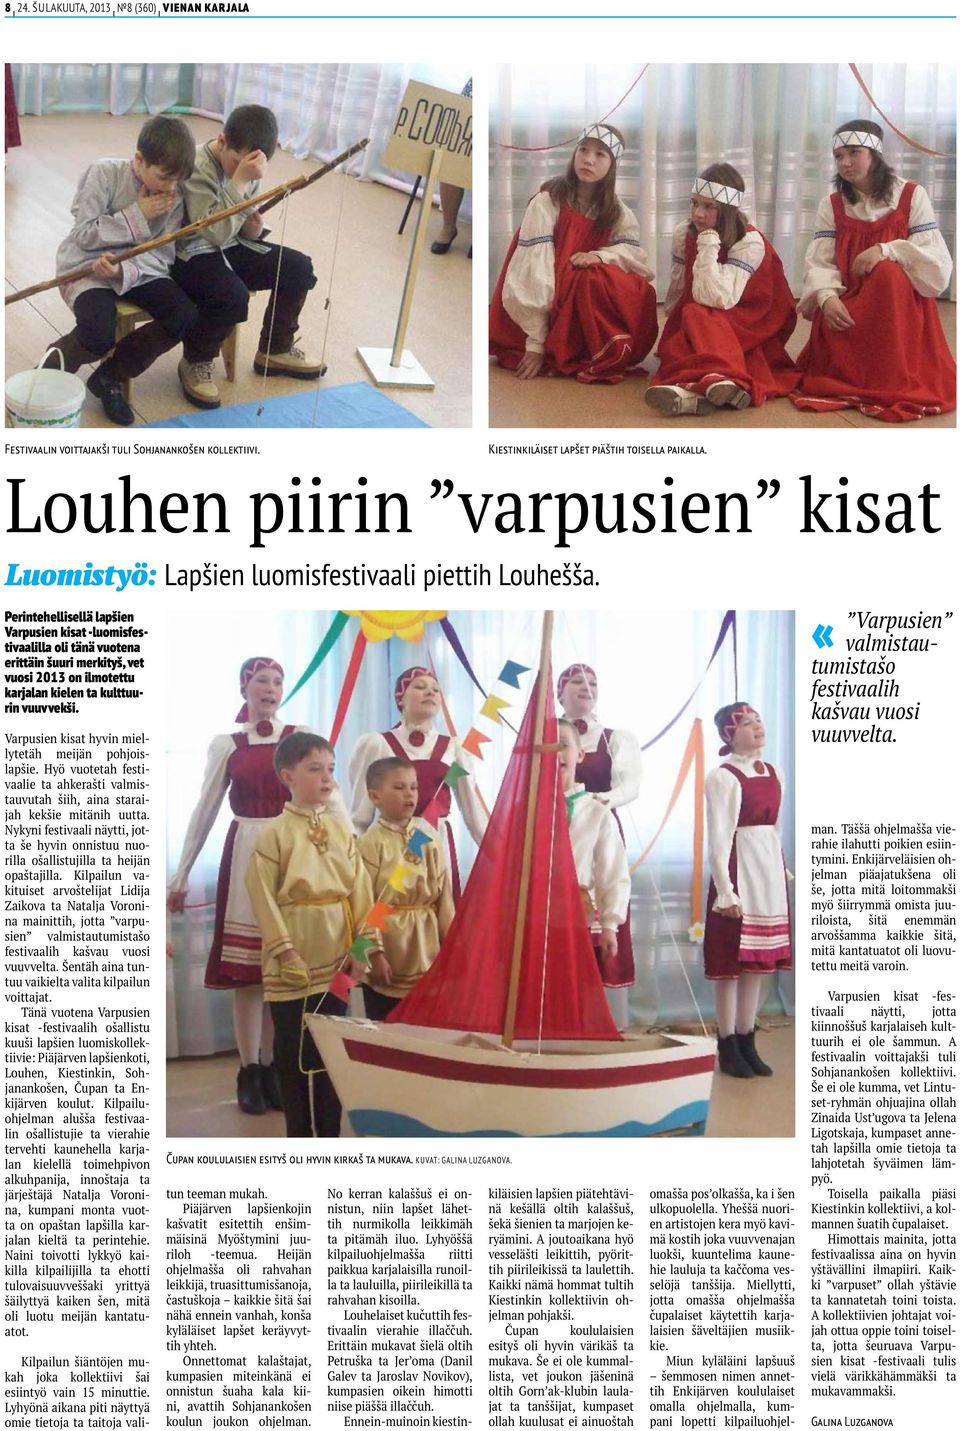 Perintehellisellä lapšien Varpusien kisat -luomisfestivaalilla oli tänä vuotena erittäin šuuri merkityš, vet vuosi 2013 on ilmotettu karjalan kielen ta kulttuurin vuuvvekši.